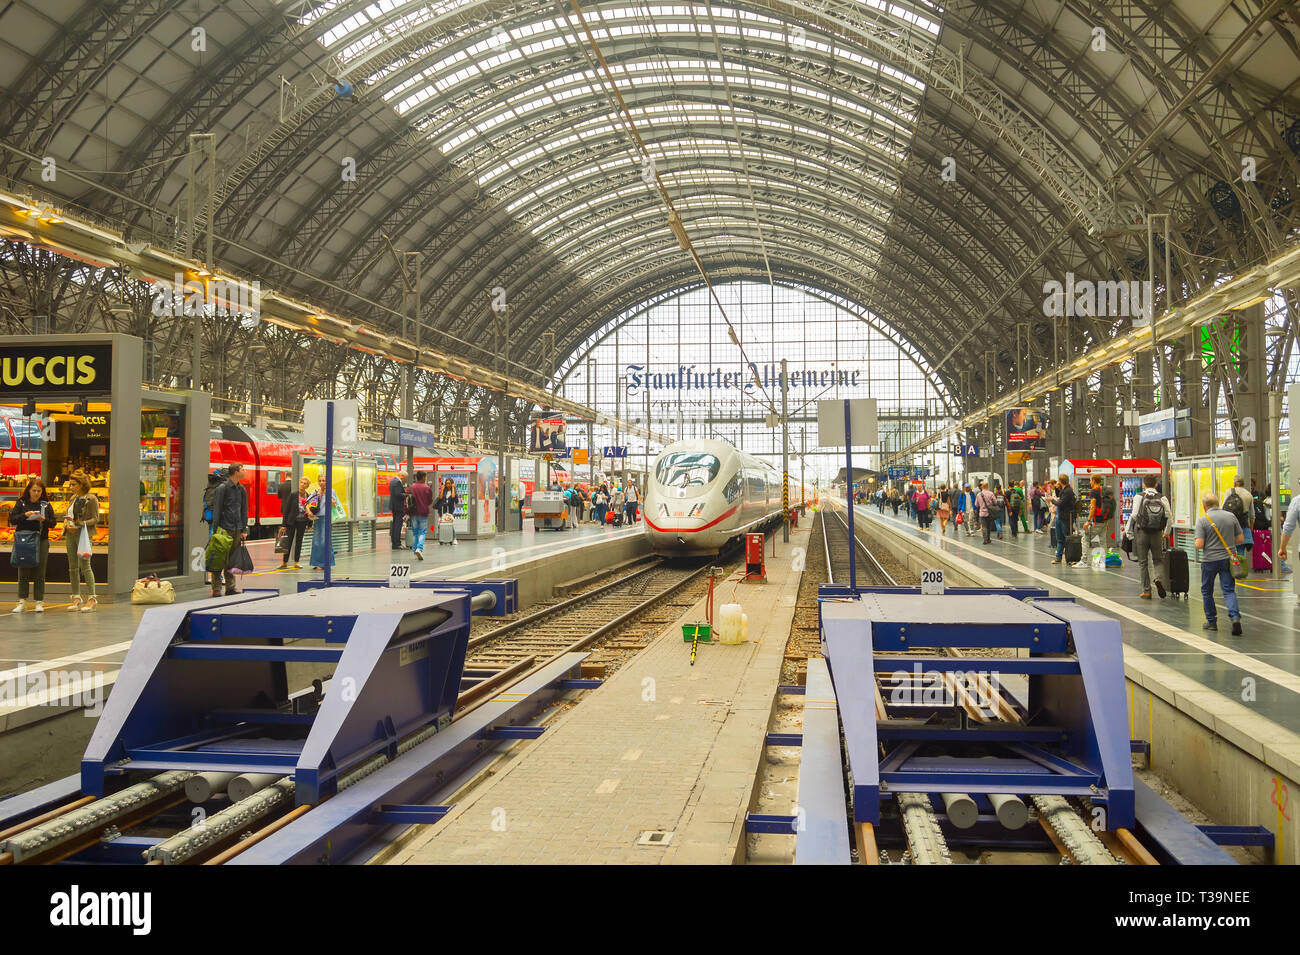 Francfort, Allemagne - le 29 août 2018 : Modern train arrive à Frankfurt am Main train station. Les personnes en attente pour l'embarquement Banque D'Images